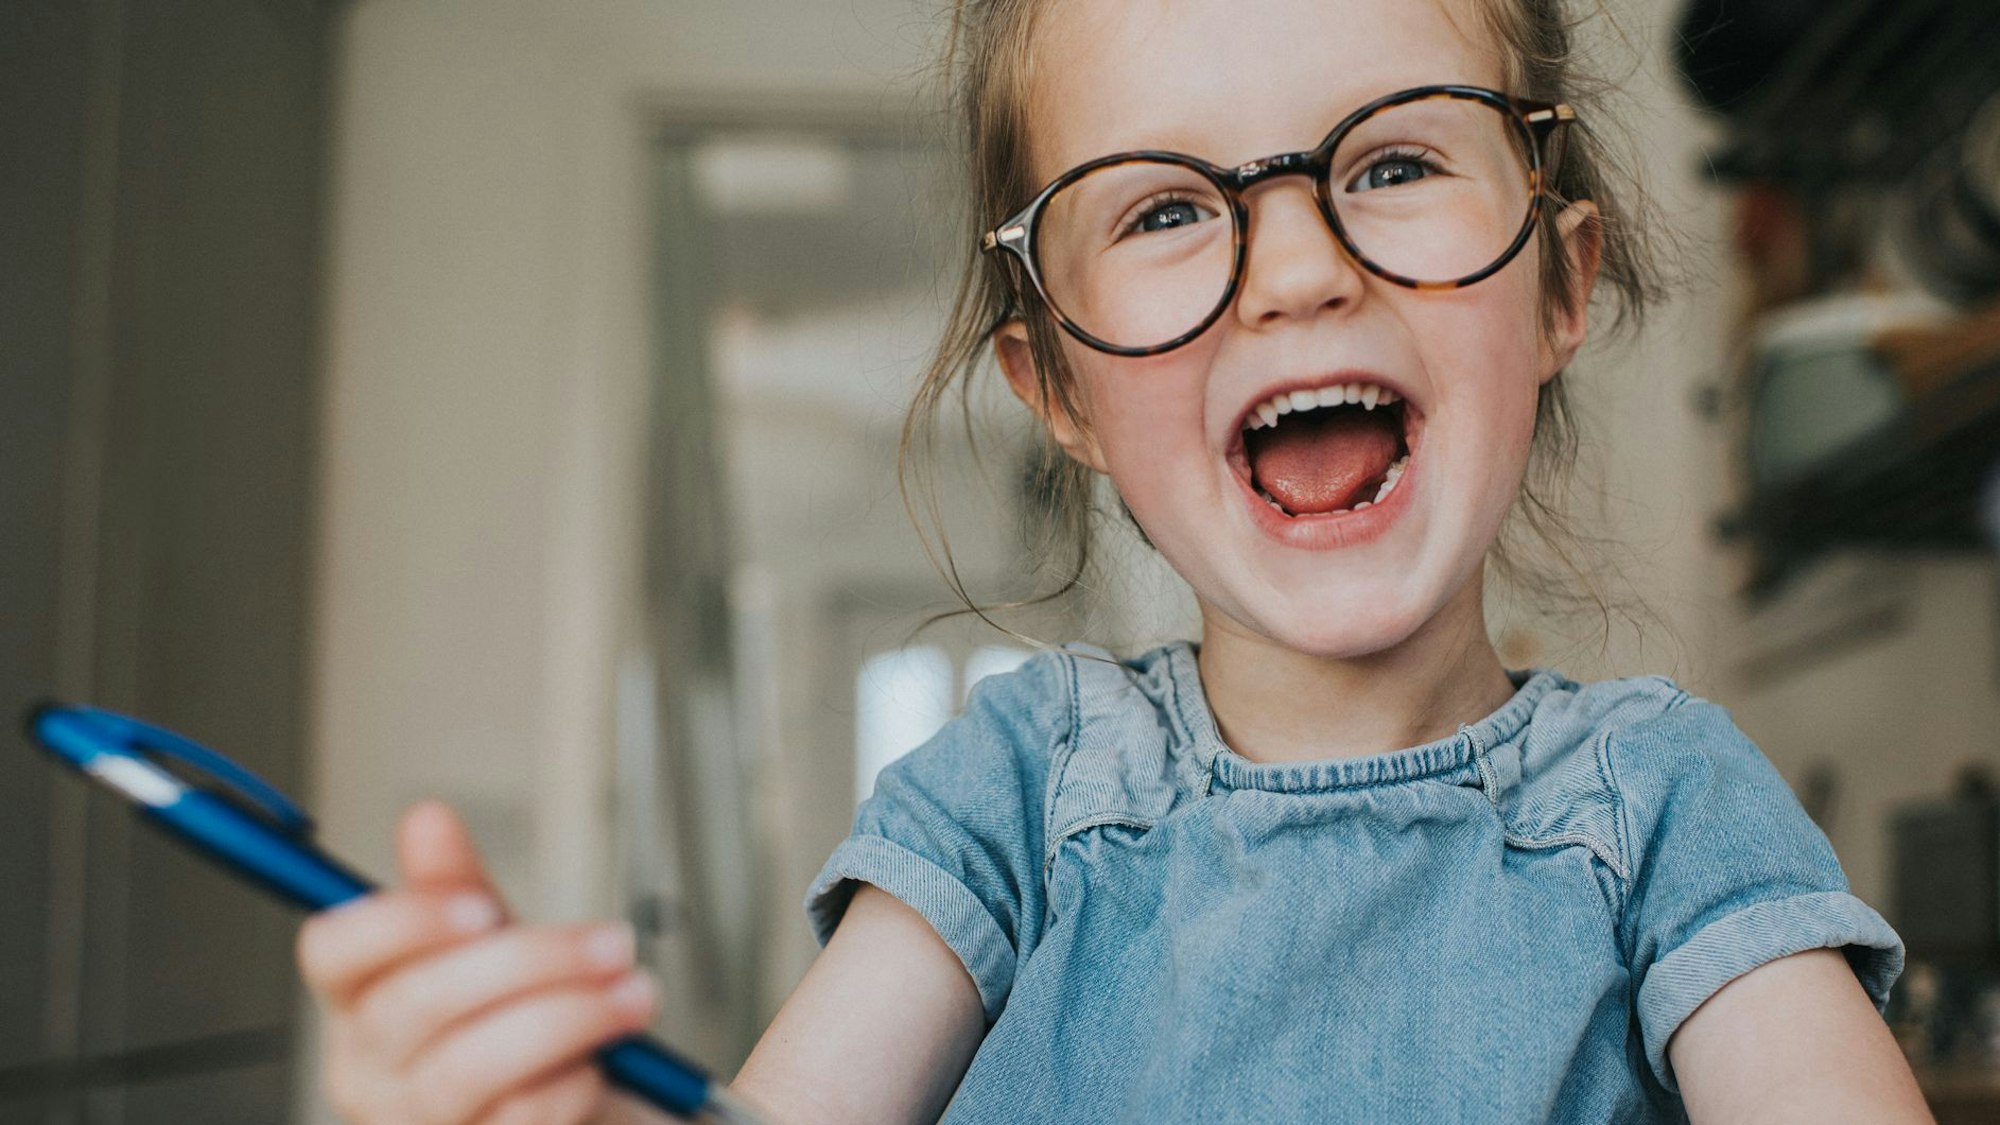 Ein kleines Mädchen mit großer runder Brille, Jeanskleid und einem Stift in der Hand, lacht mit offenem Mund.